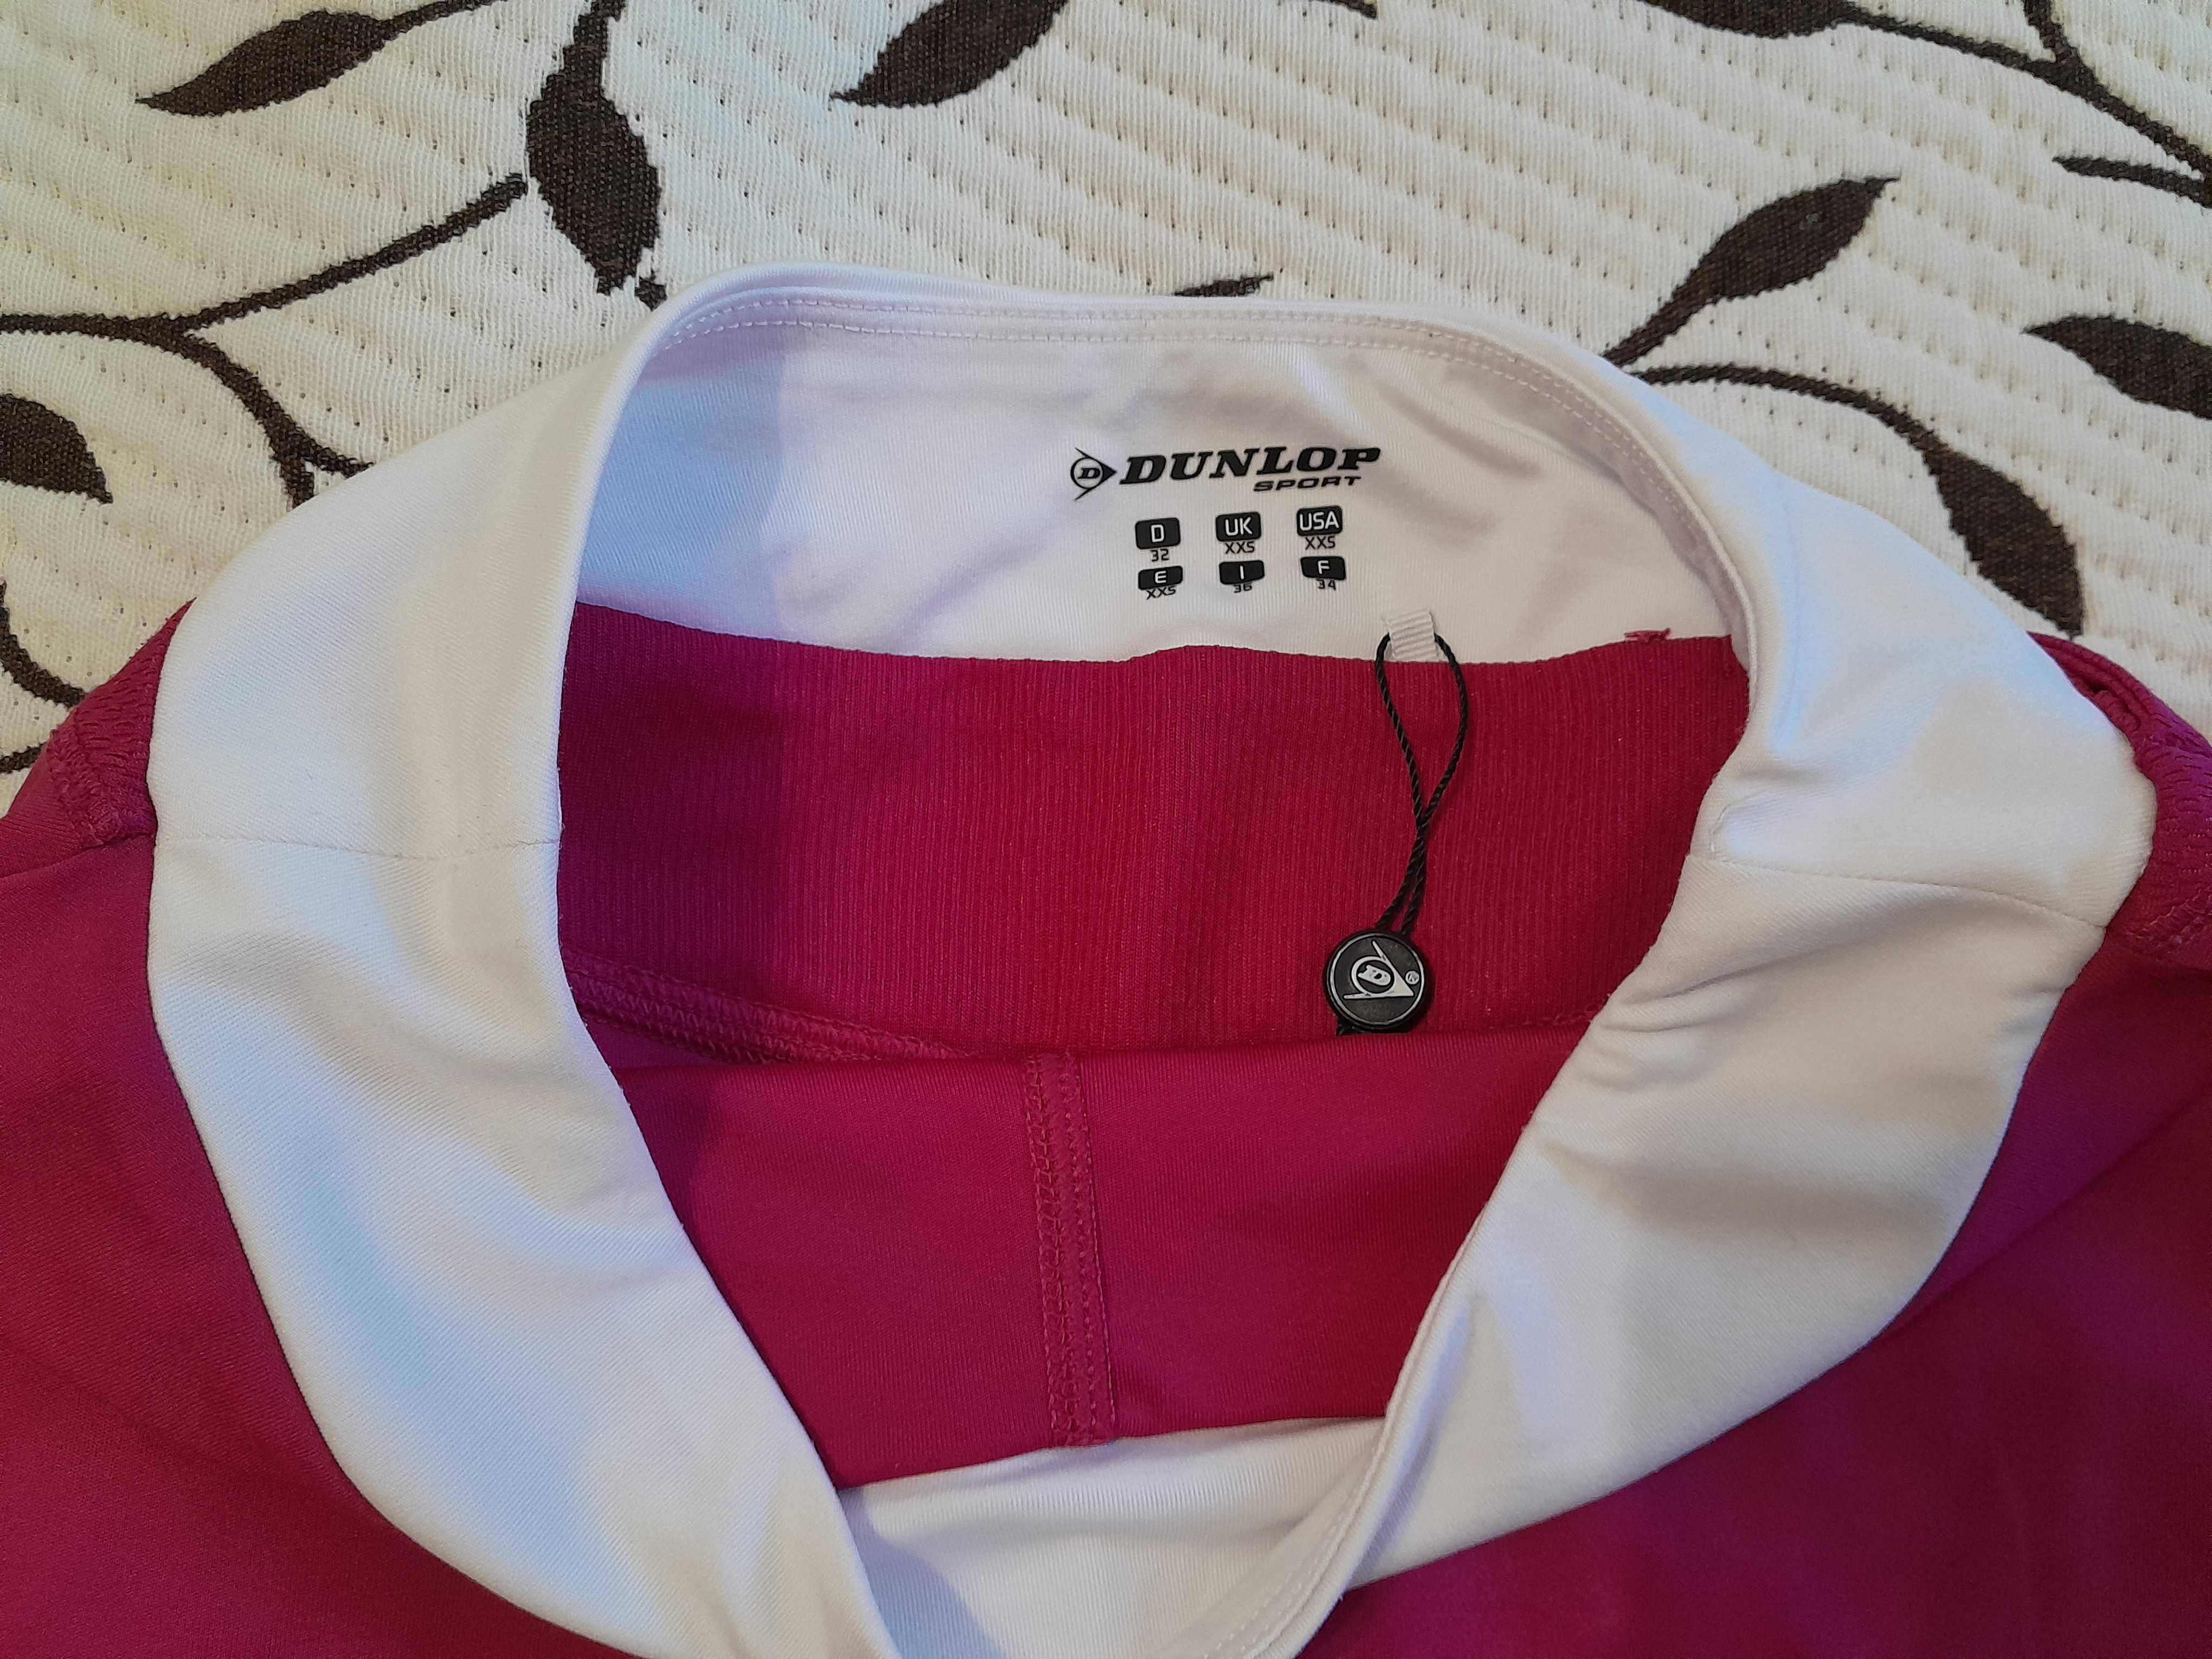 Юбка-шорты спортивная для девочки 12-14 лет, размер XXS, фирмы Dunlop